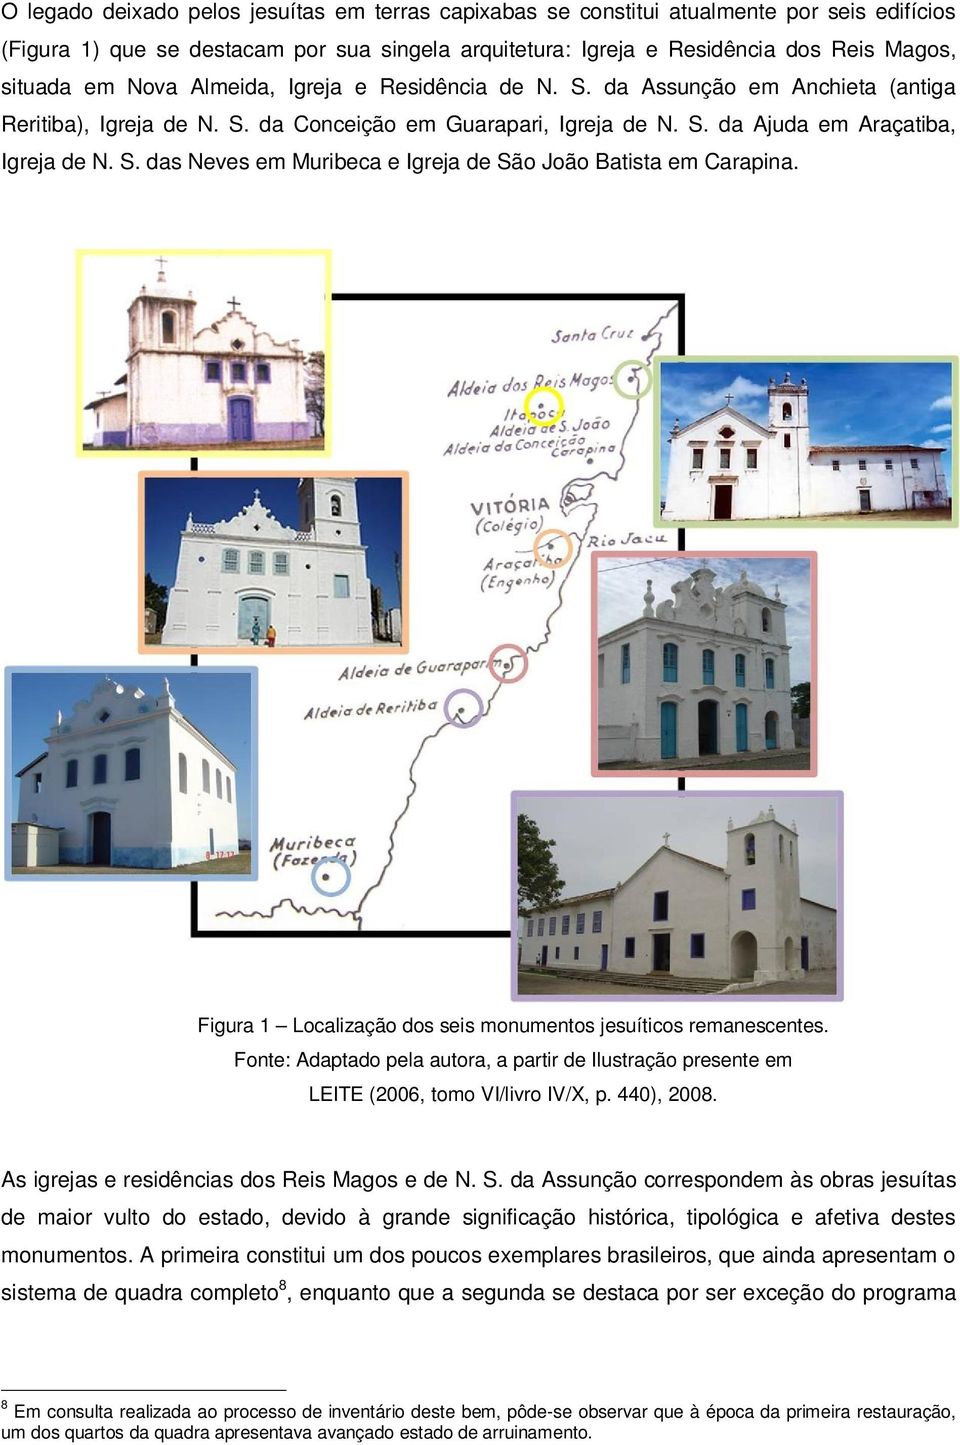 Figura 1 Localização dos seis monumentos jesuíticos remanescentes. Fonte: Adaptado pela autora, a partir de Ilustração presente em LEITE (2006, tomo VI/livro IV/X, p. 440), 2008.